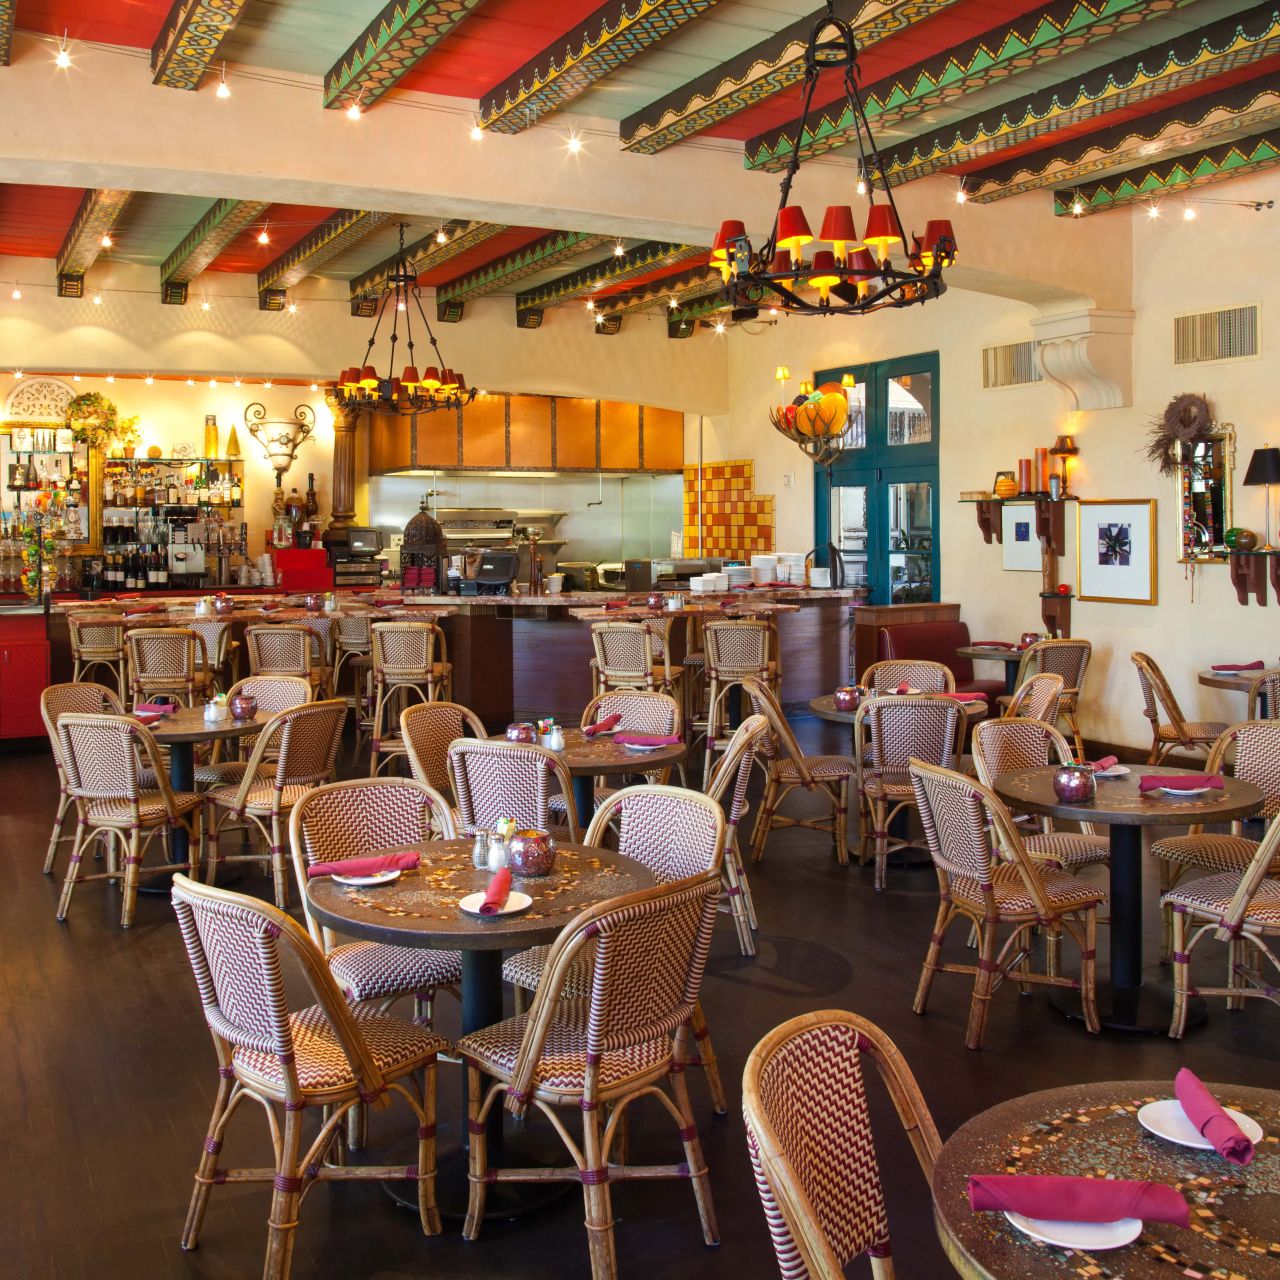 The Prado's Restaurant Week – Dinner Menu - The Prado at Balboa Park